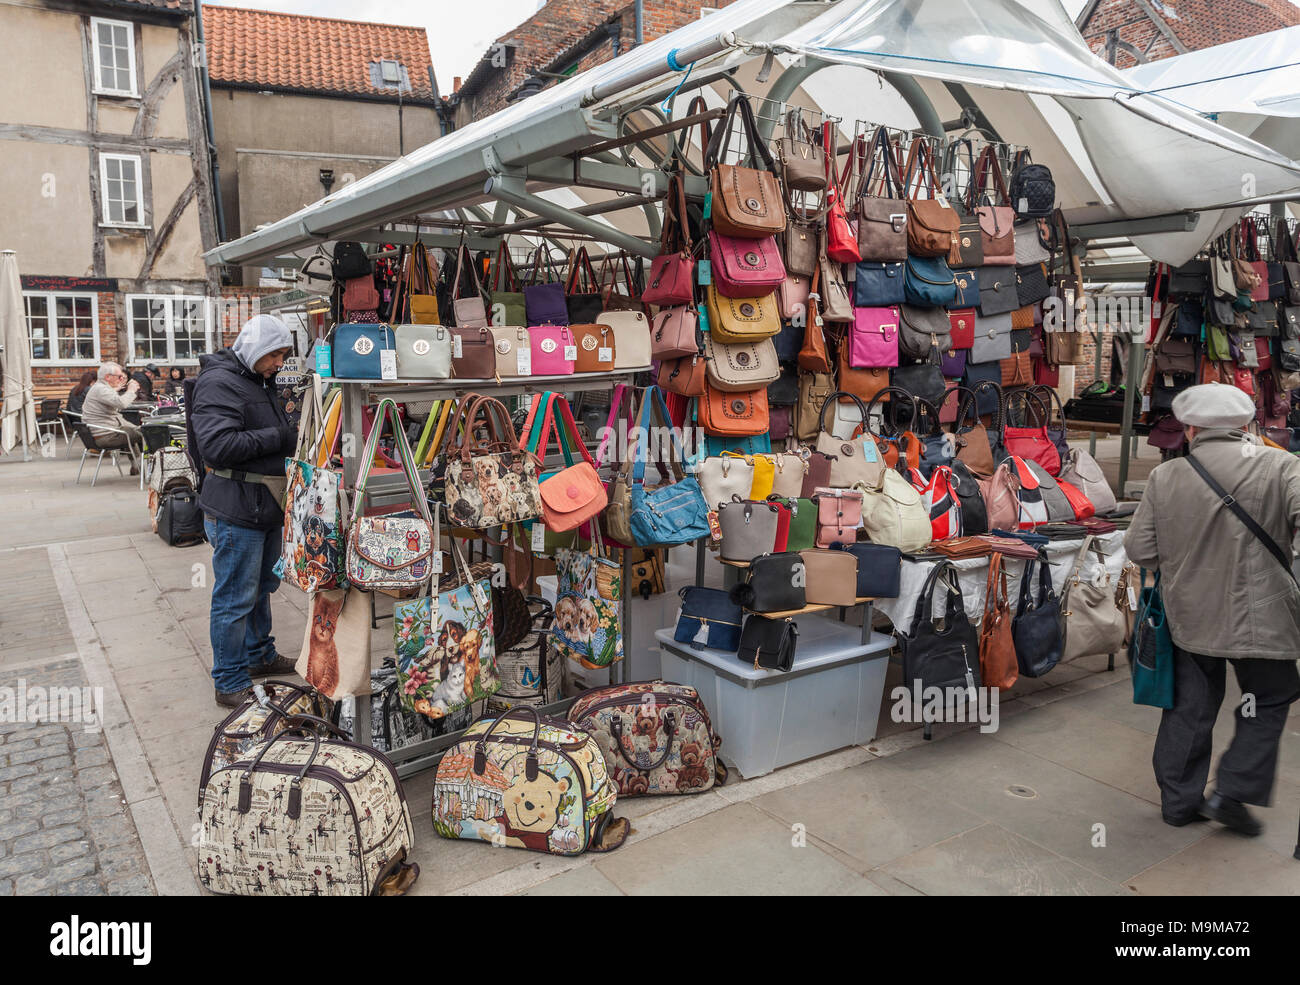 Taschen und Handtaschen auf dem Markt in York, North Yorkshire, England, UK  Abschaltdruck Stockfotografie - Alamy